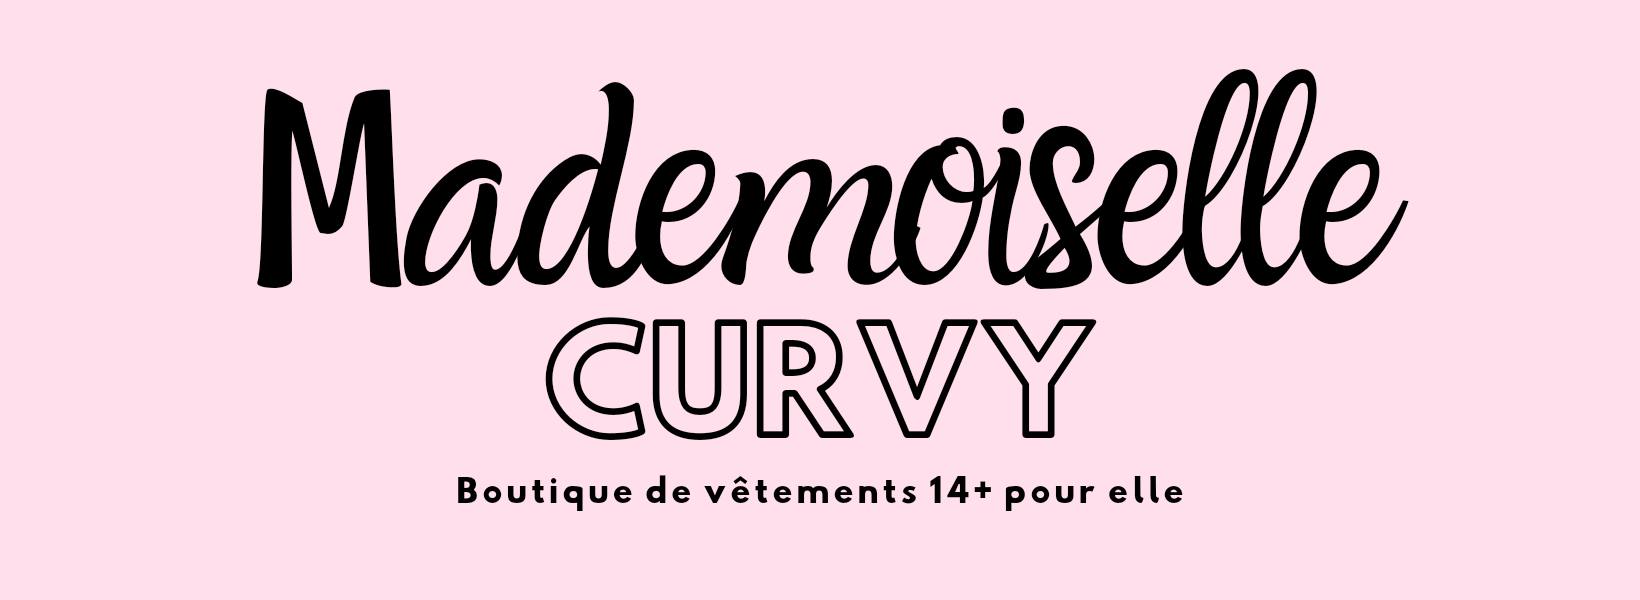 Mademoiselle Curvy